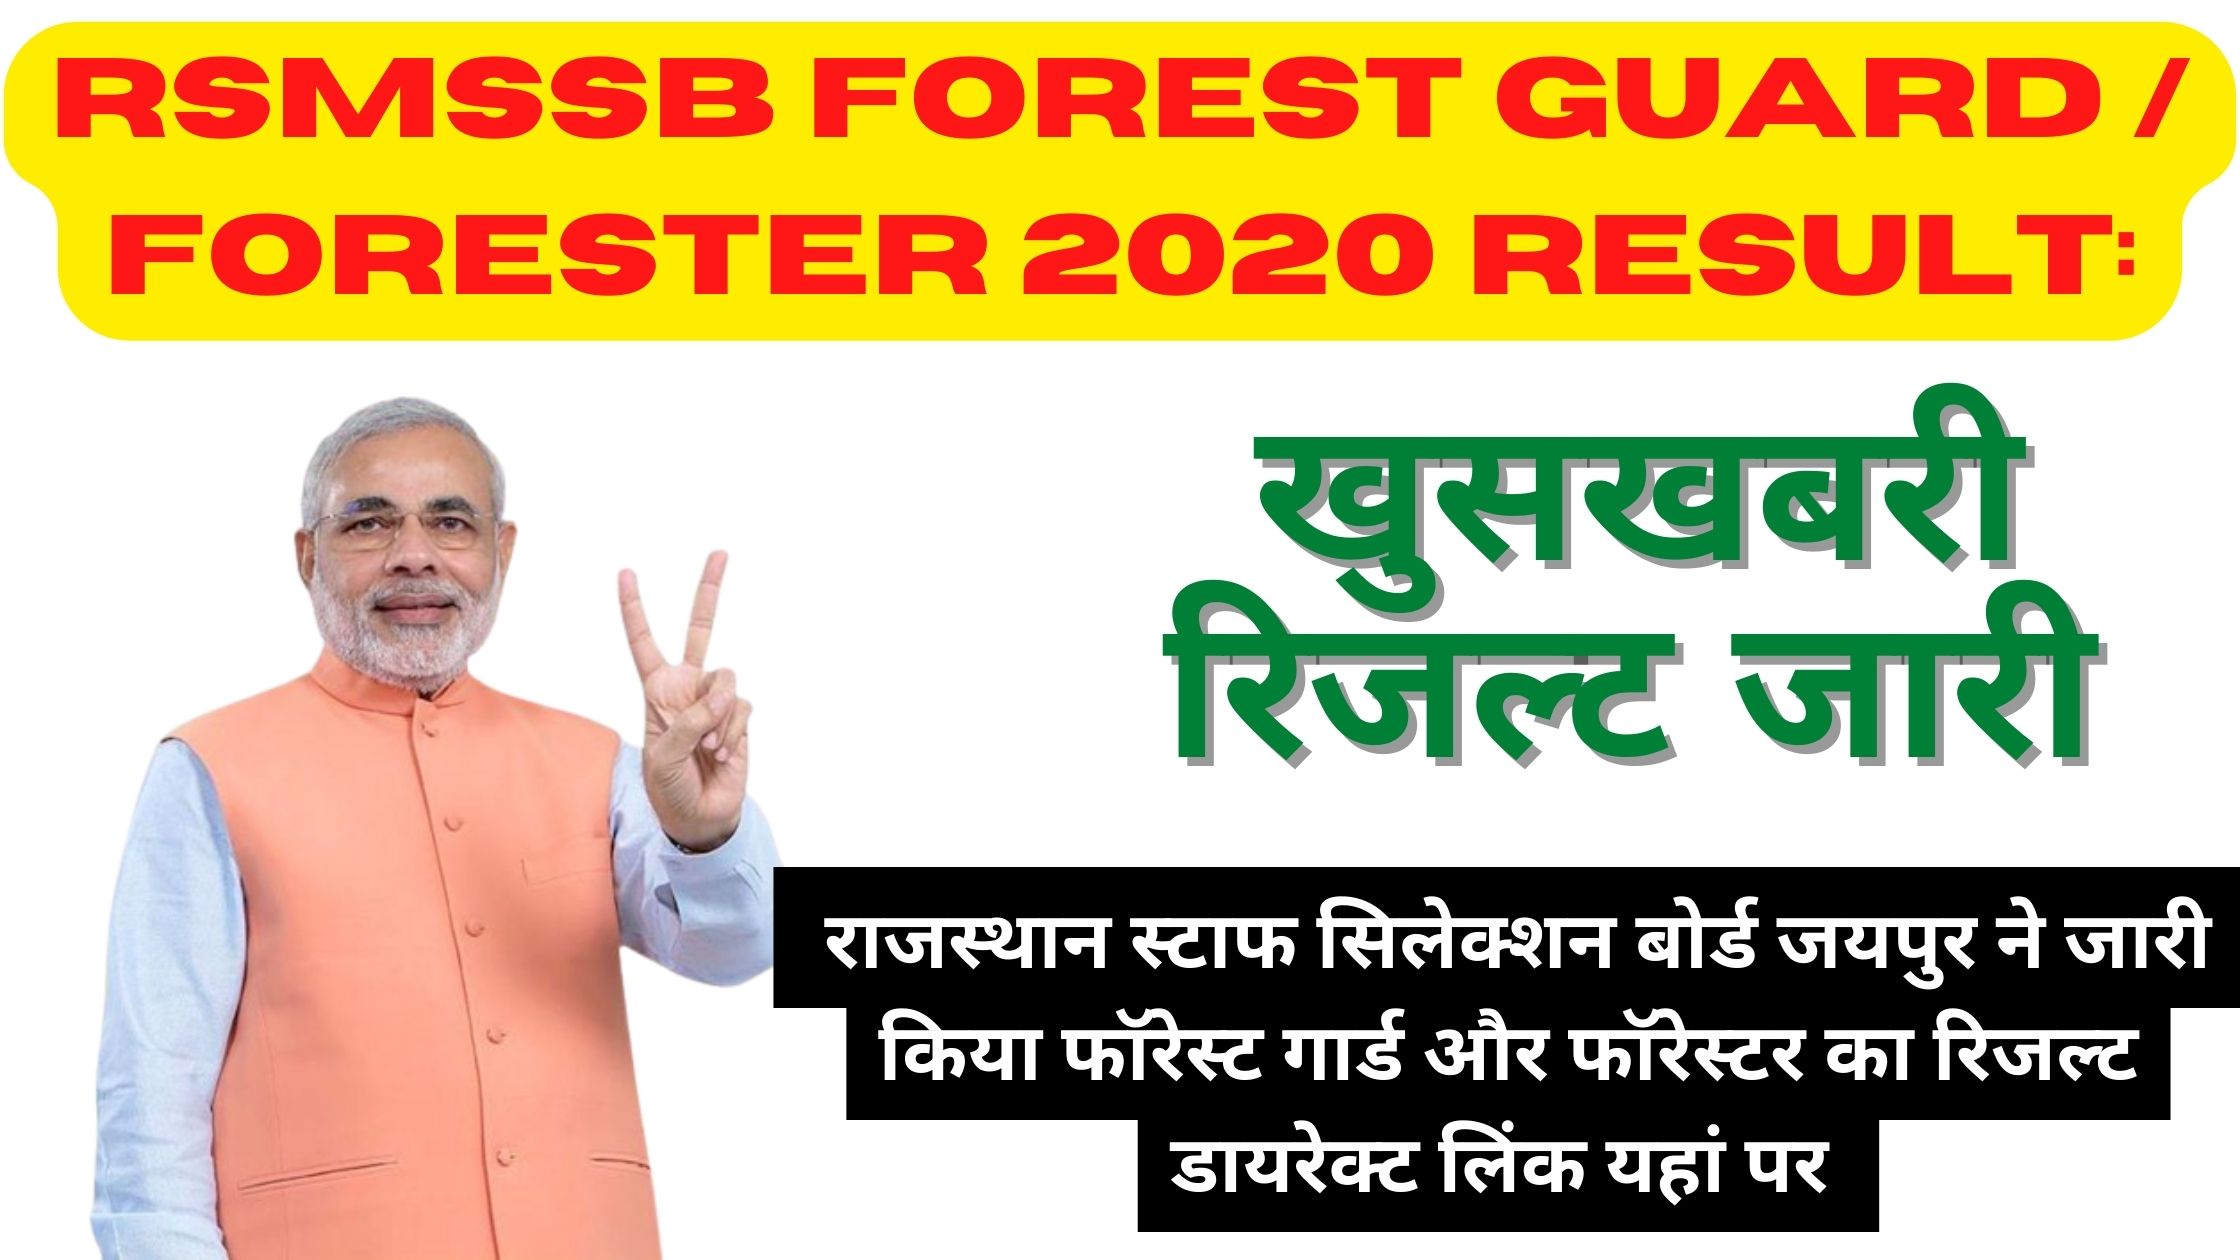 RSMSSB Forest Guard / Forester 2020 Result:  राजस्थान स्टाफ सिलेक्शन बोर्ड जयपुर ने जारी किया फॉरेस्ट गार्ड और फॉरेस्टर का रिजल्ट डायरेक्ट लिंक यहां पर